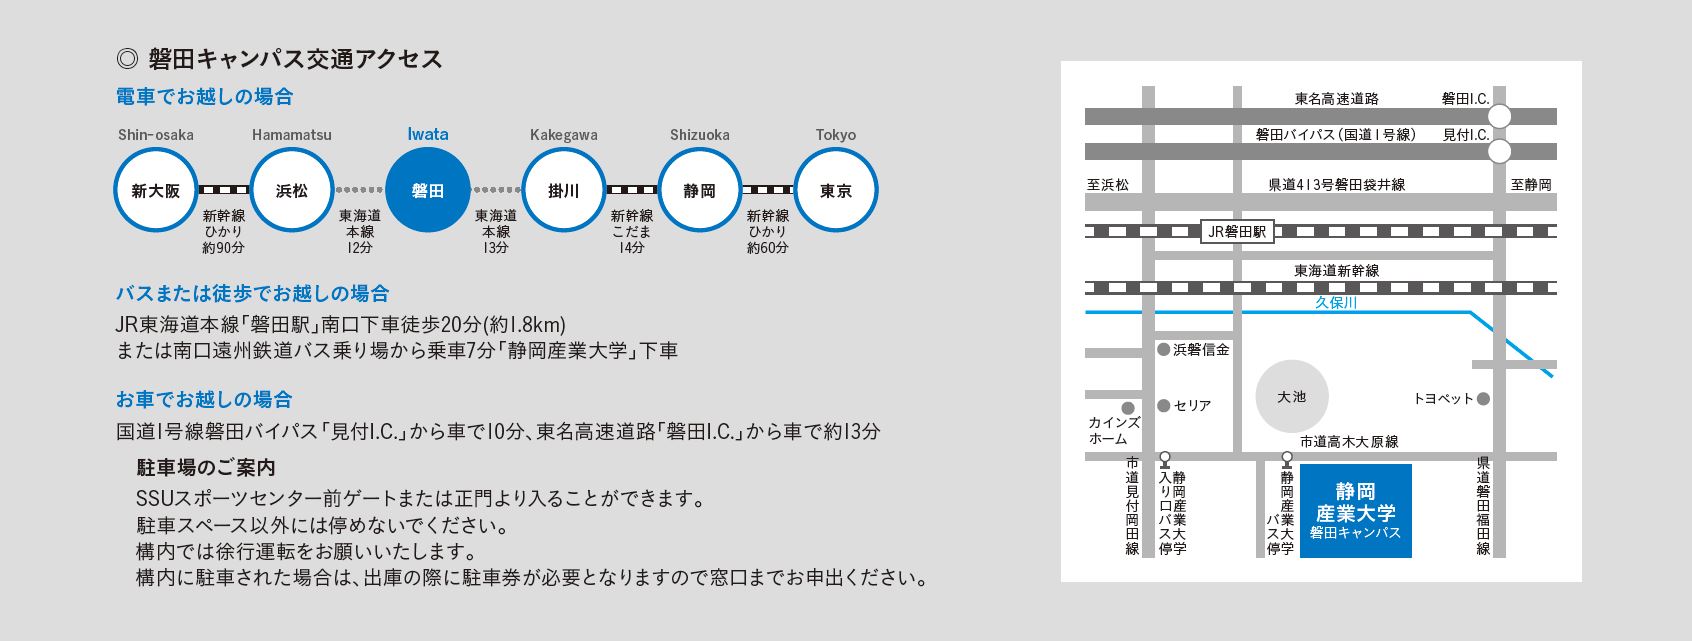 磐田キャンパス交通アクセス図